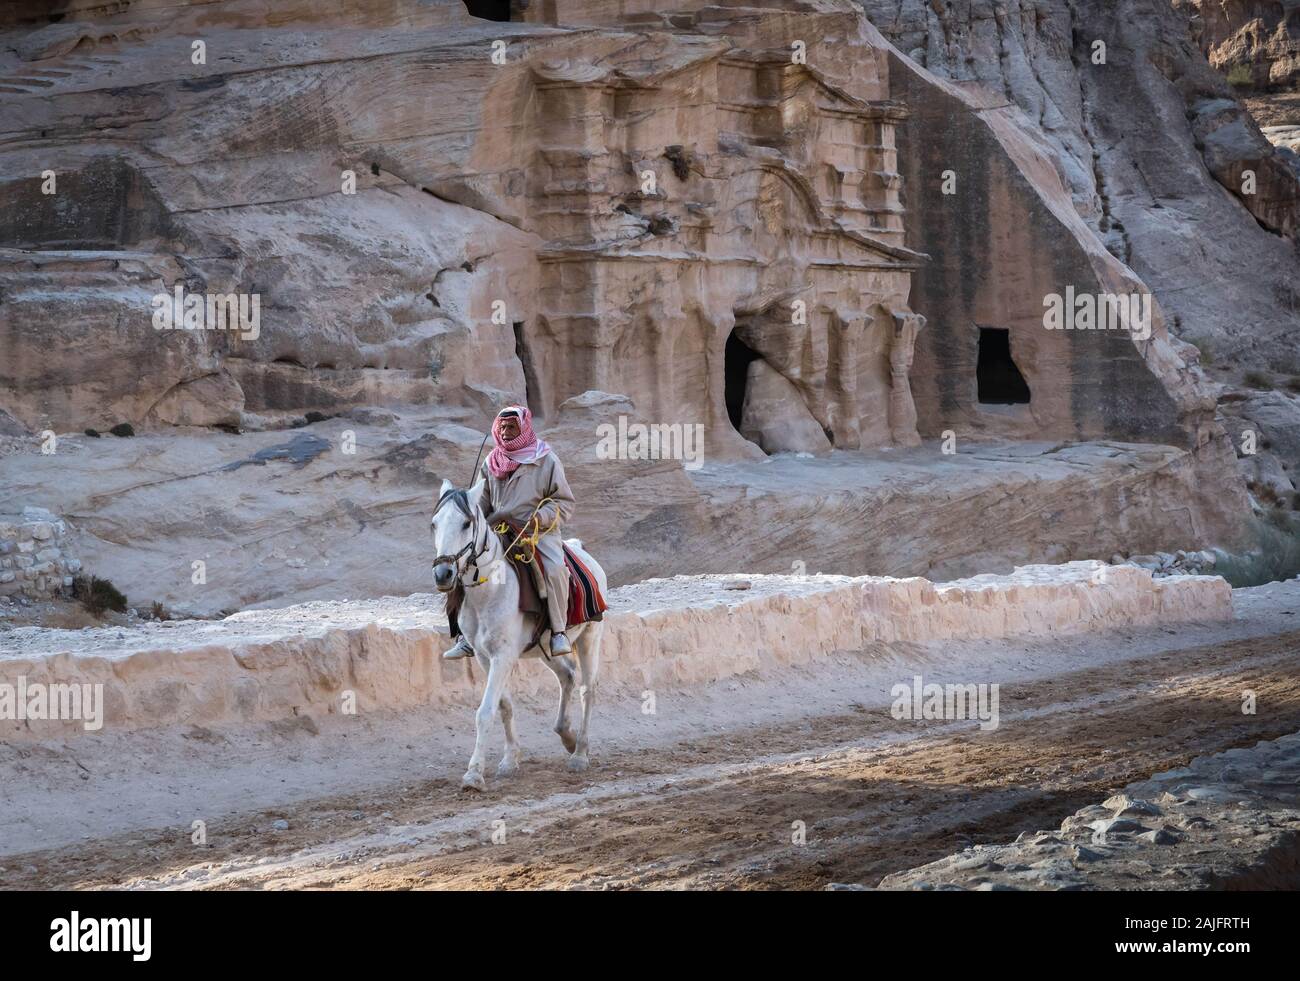 Petra, Jordanie : homme Bédouin un cheval blanc à proximité de la zone archéologique de la trésorerie, Site du patrimoine mondial de l'UNESCO Banque D'Images